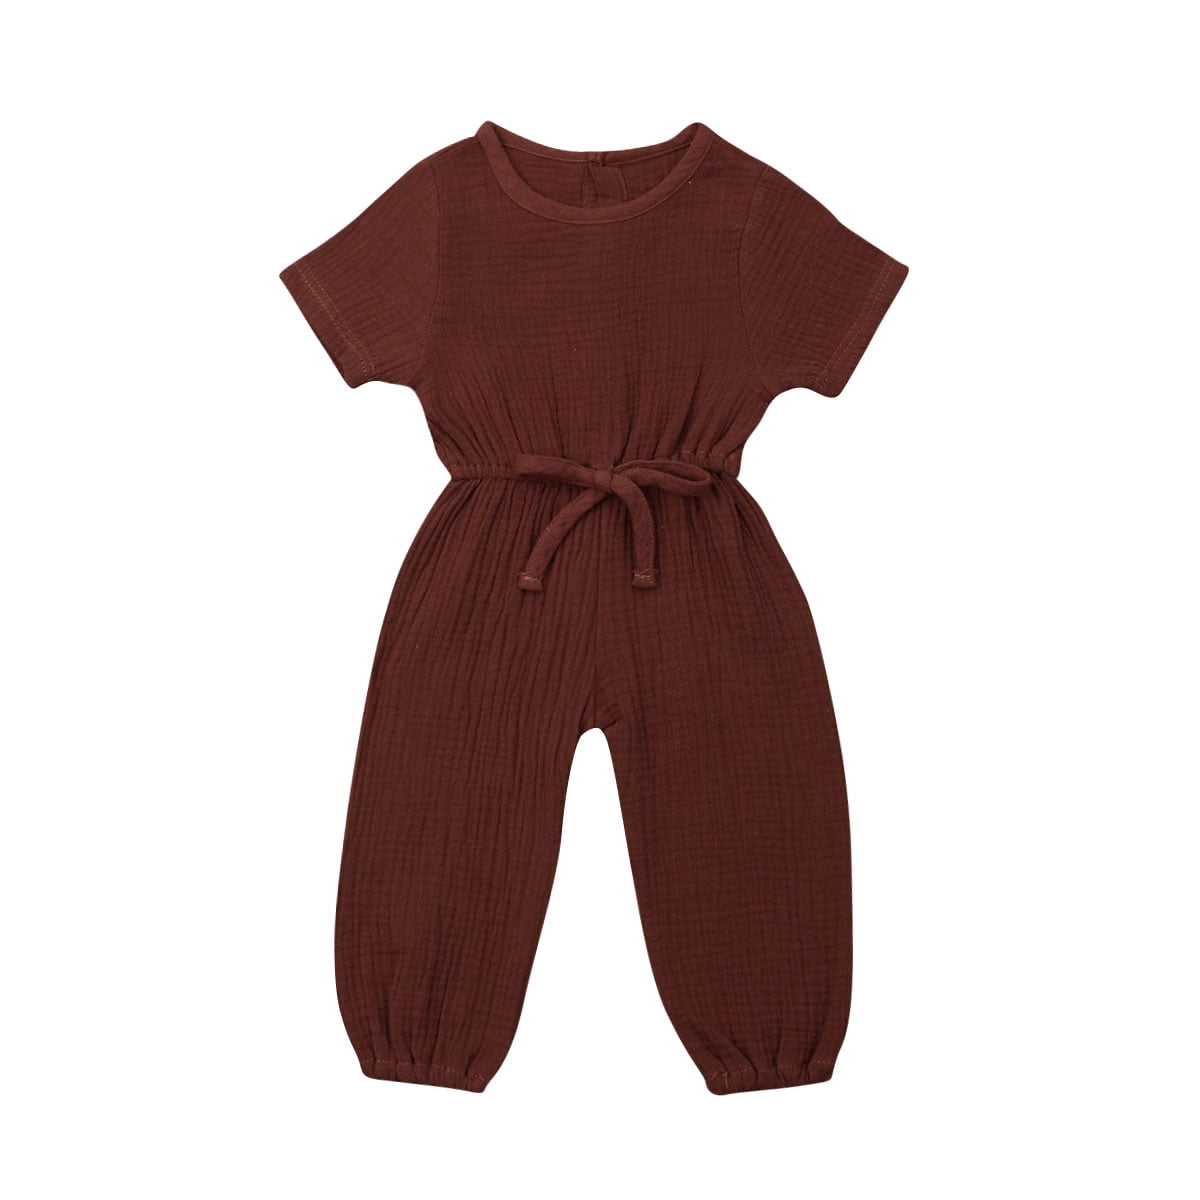 squarex Infant Baby Kids Girl Boy Print Romper Jumpsuit Outfits Sunsuit Clothes 